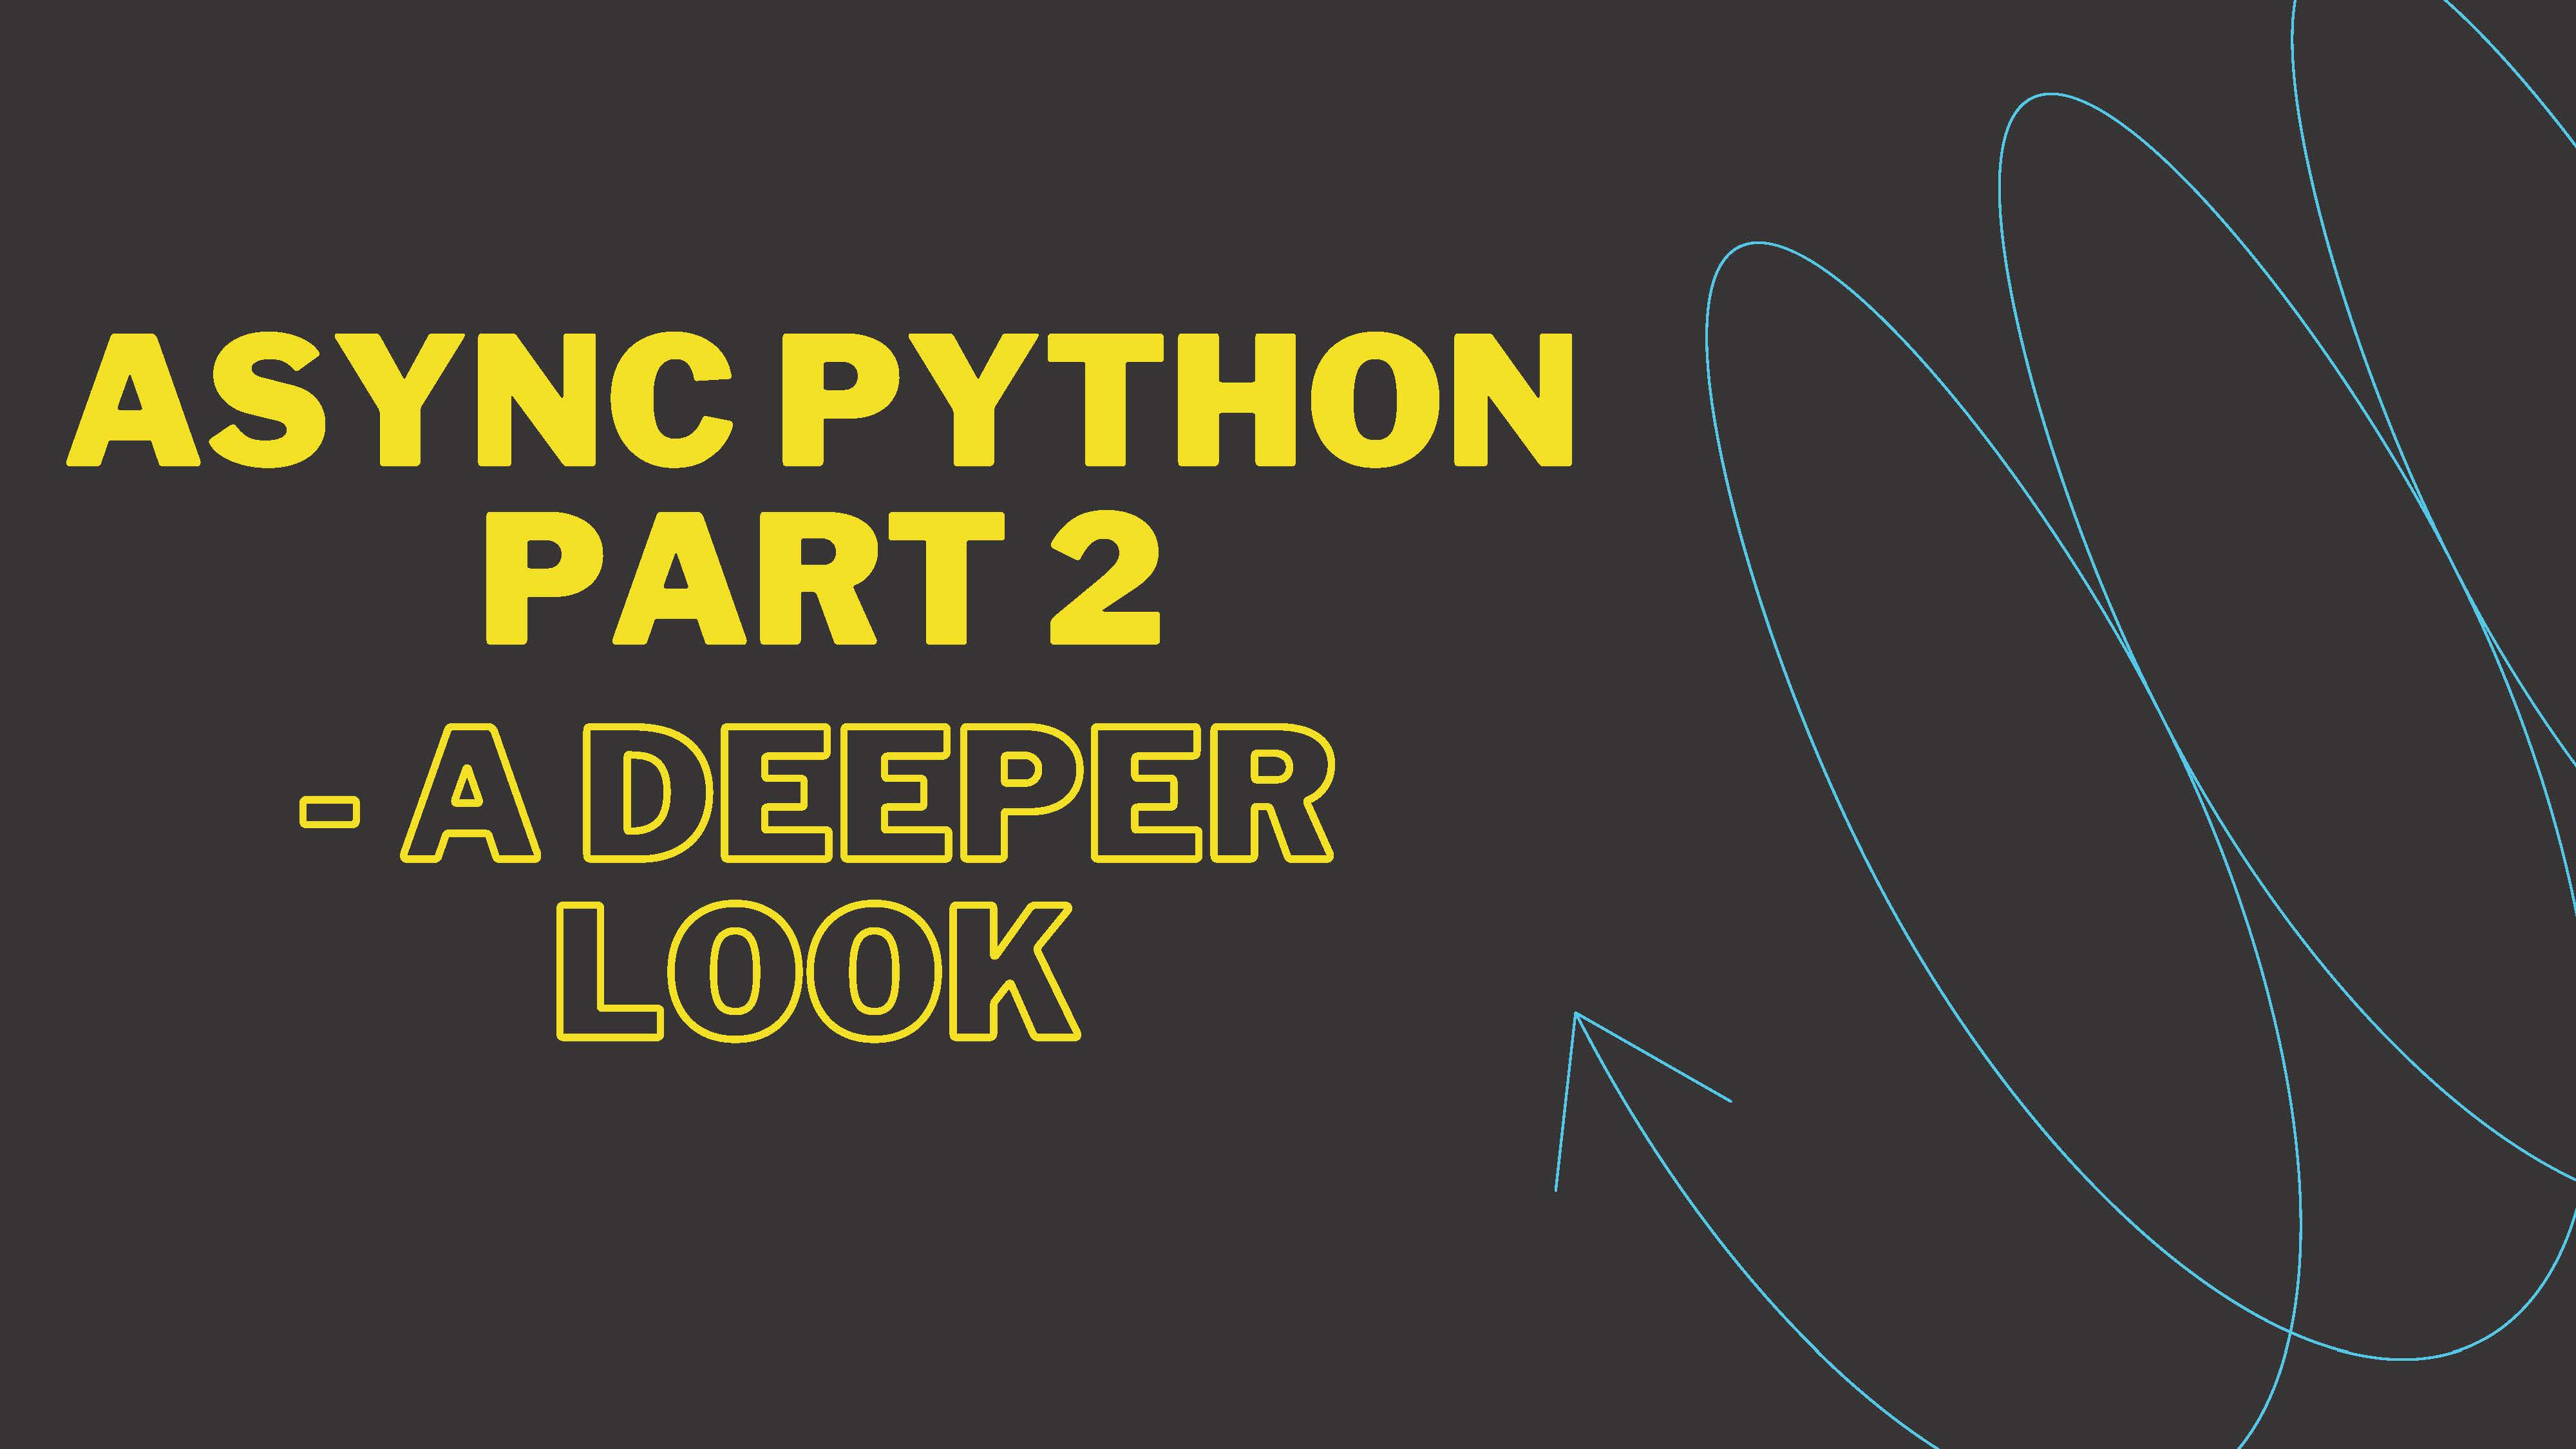 Async Python Part 2 - A deeper look